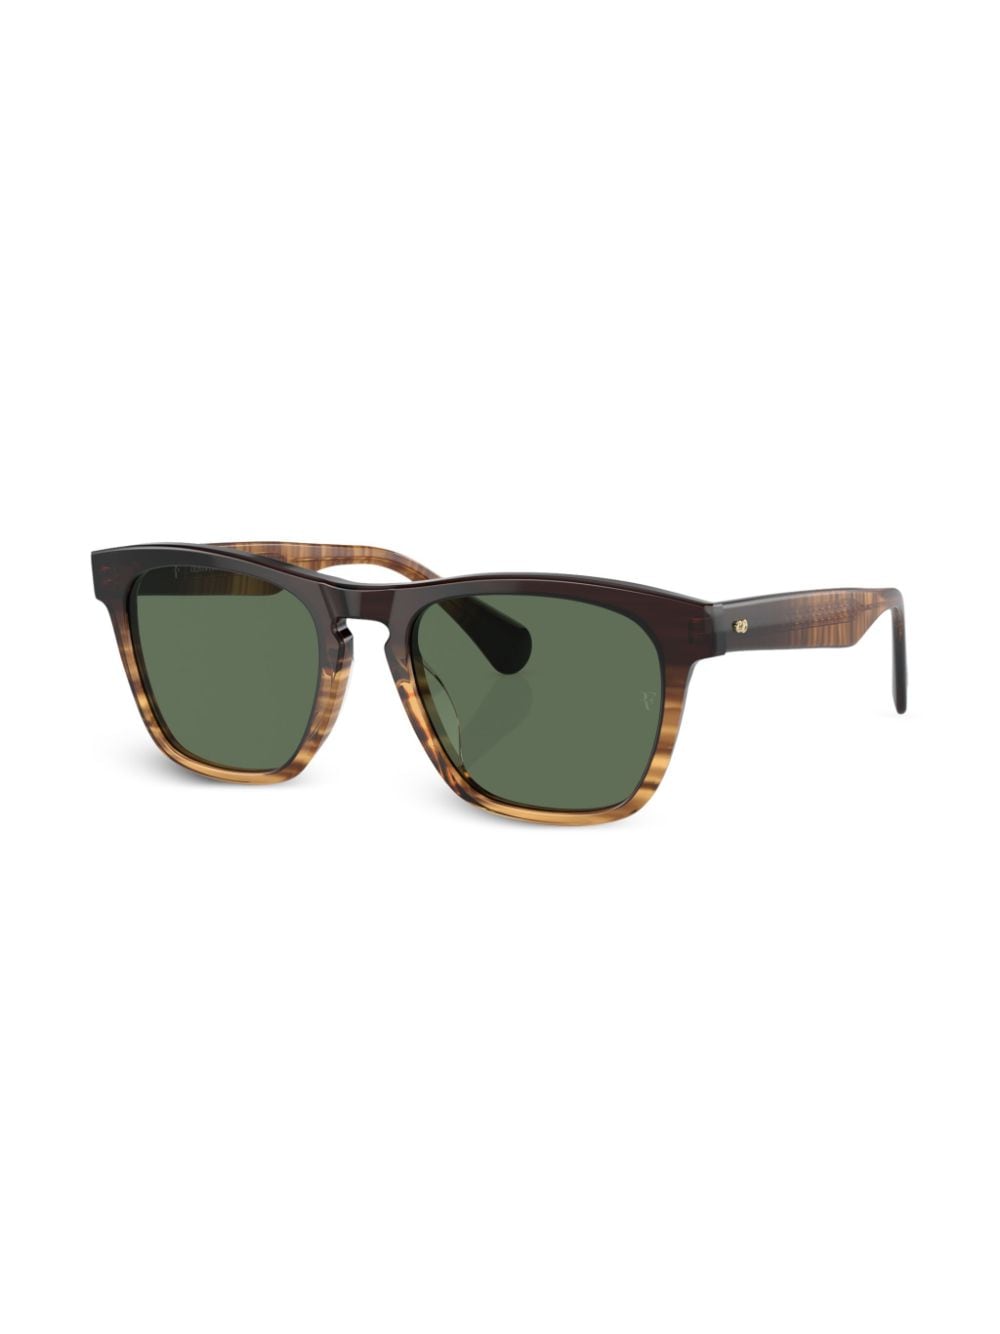 Oliver Peoples R-3 zonnebril met wayfarer montuur - Bruin